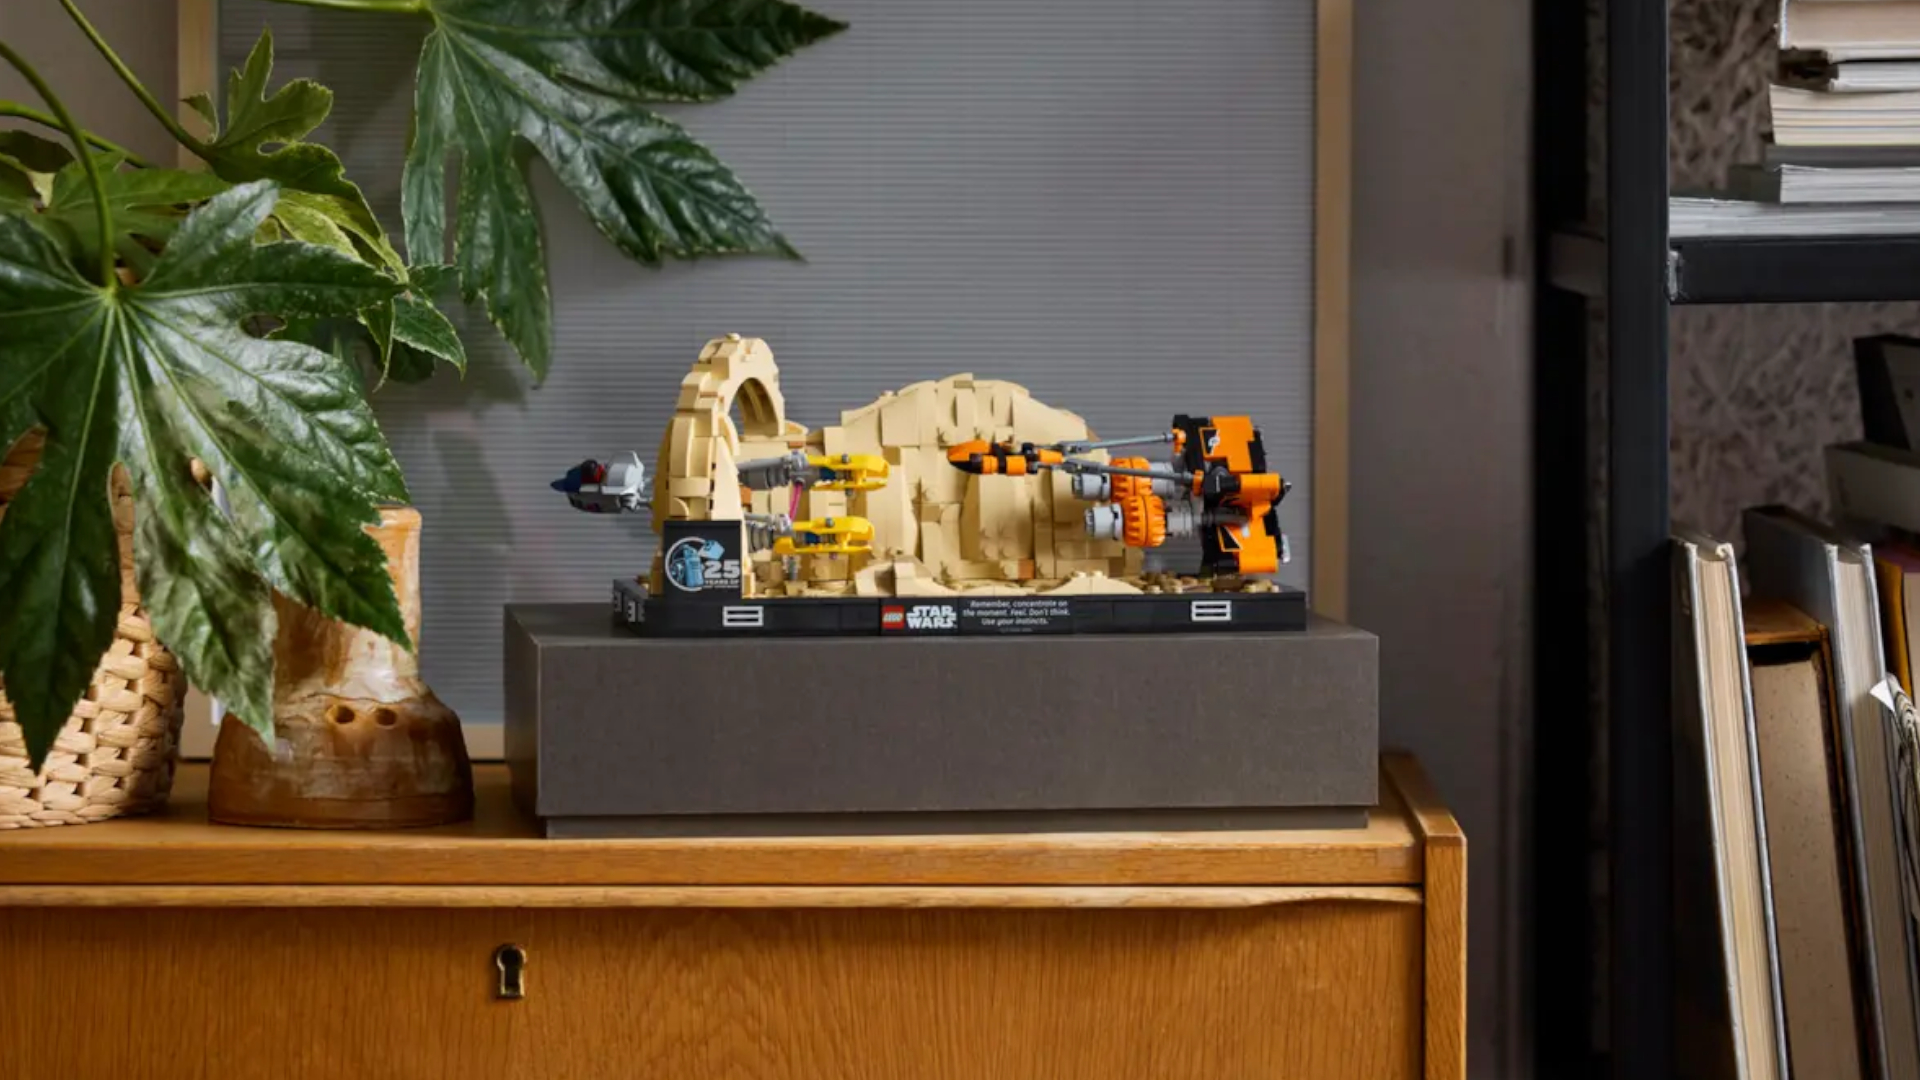 Lego Mos Espa Podrace Diorama  on a shelf, seen side-on